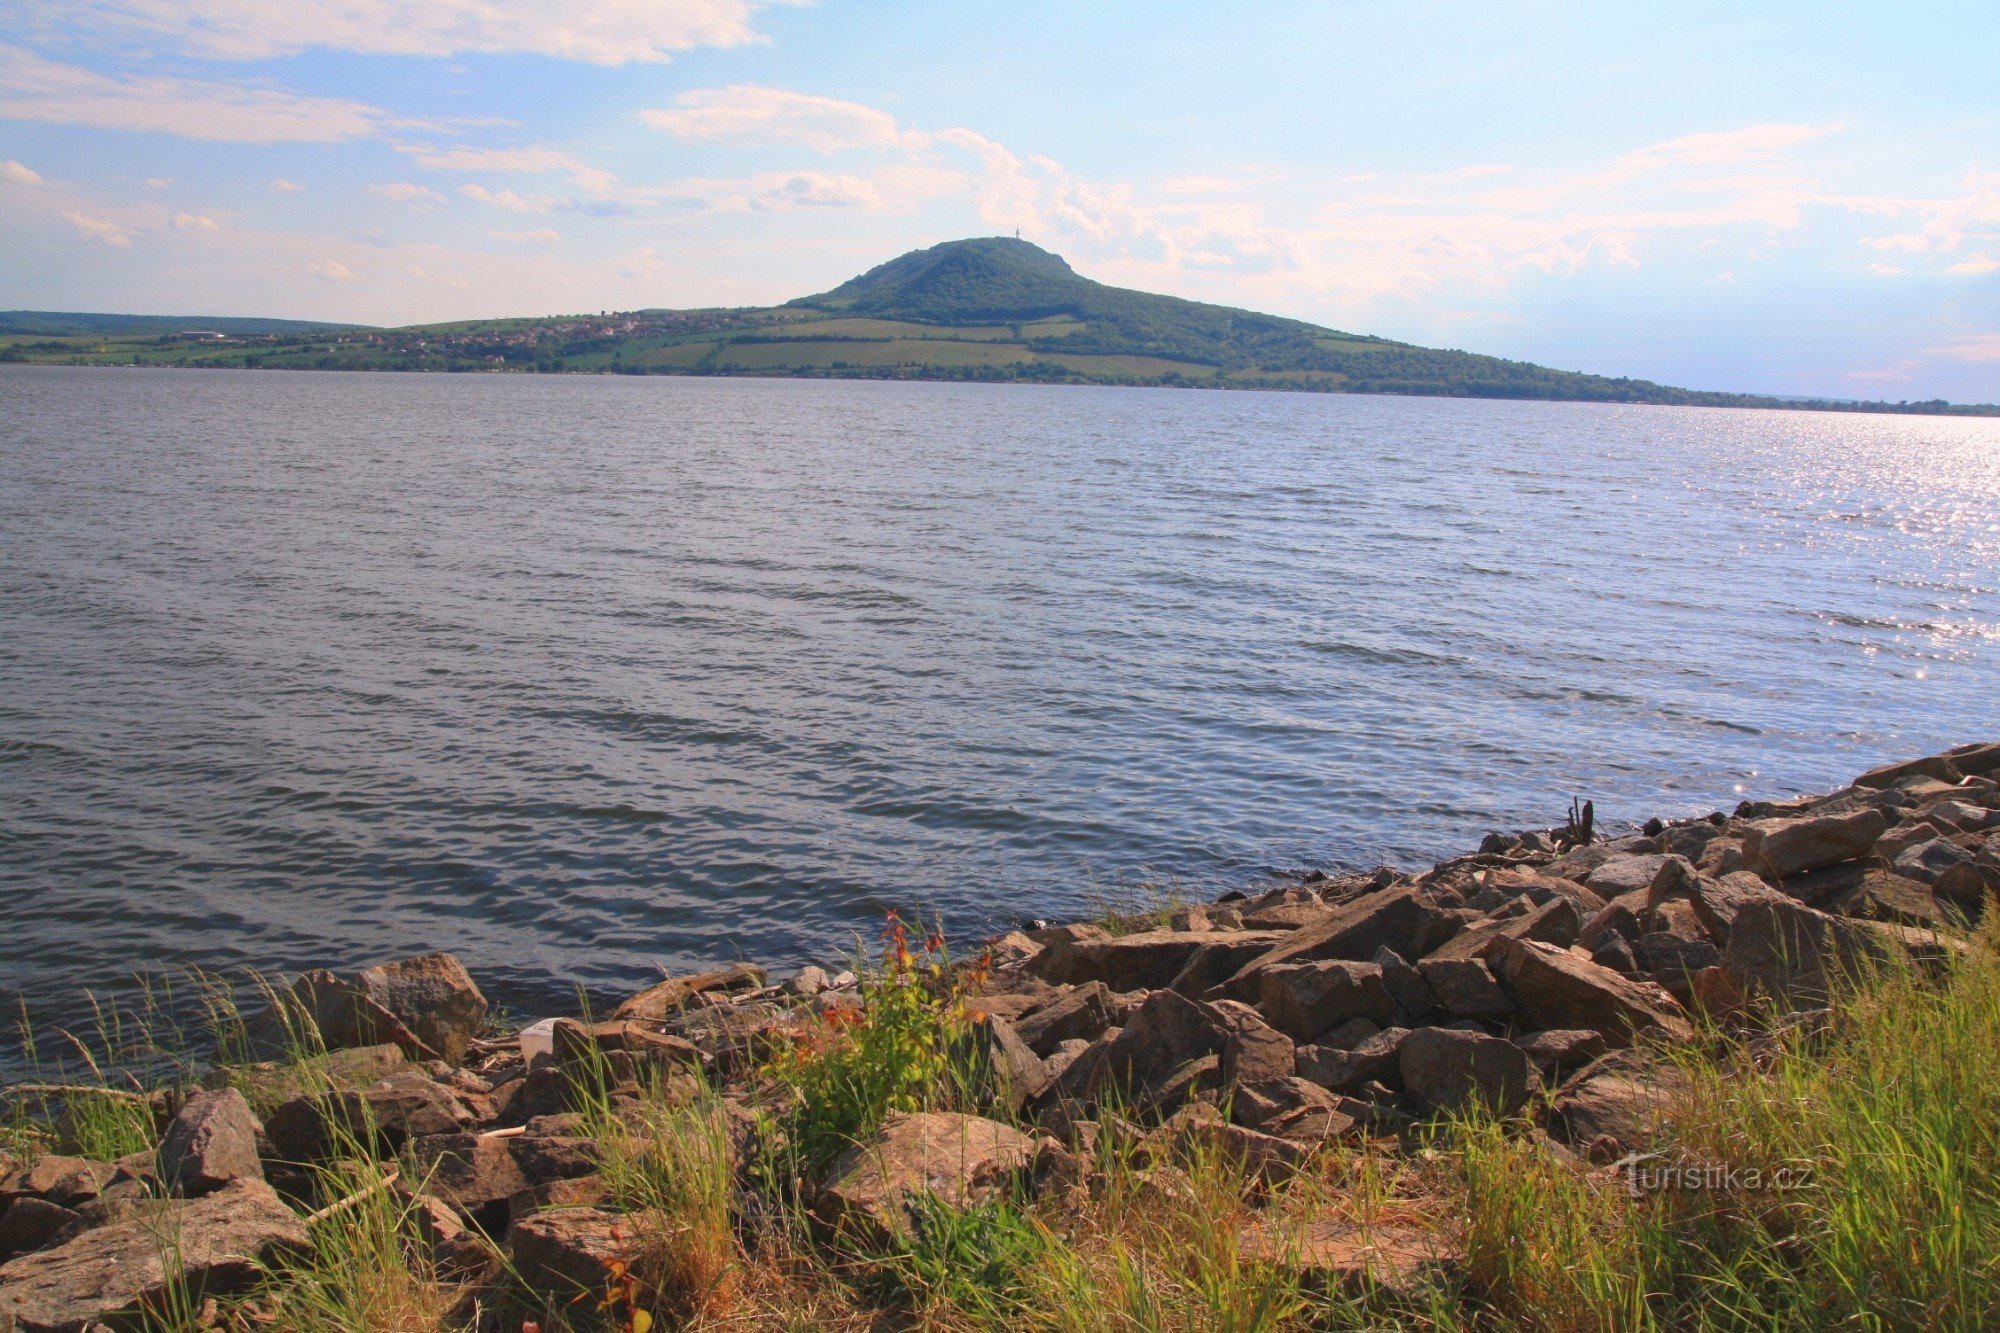 С дамбы открывается вид на обширную поверхность Новомлинского водохранилища с гребнем Палавы.